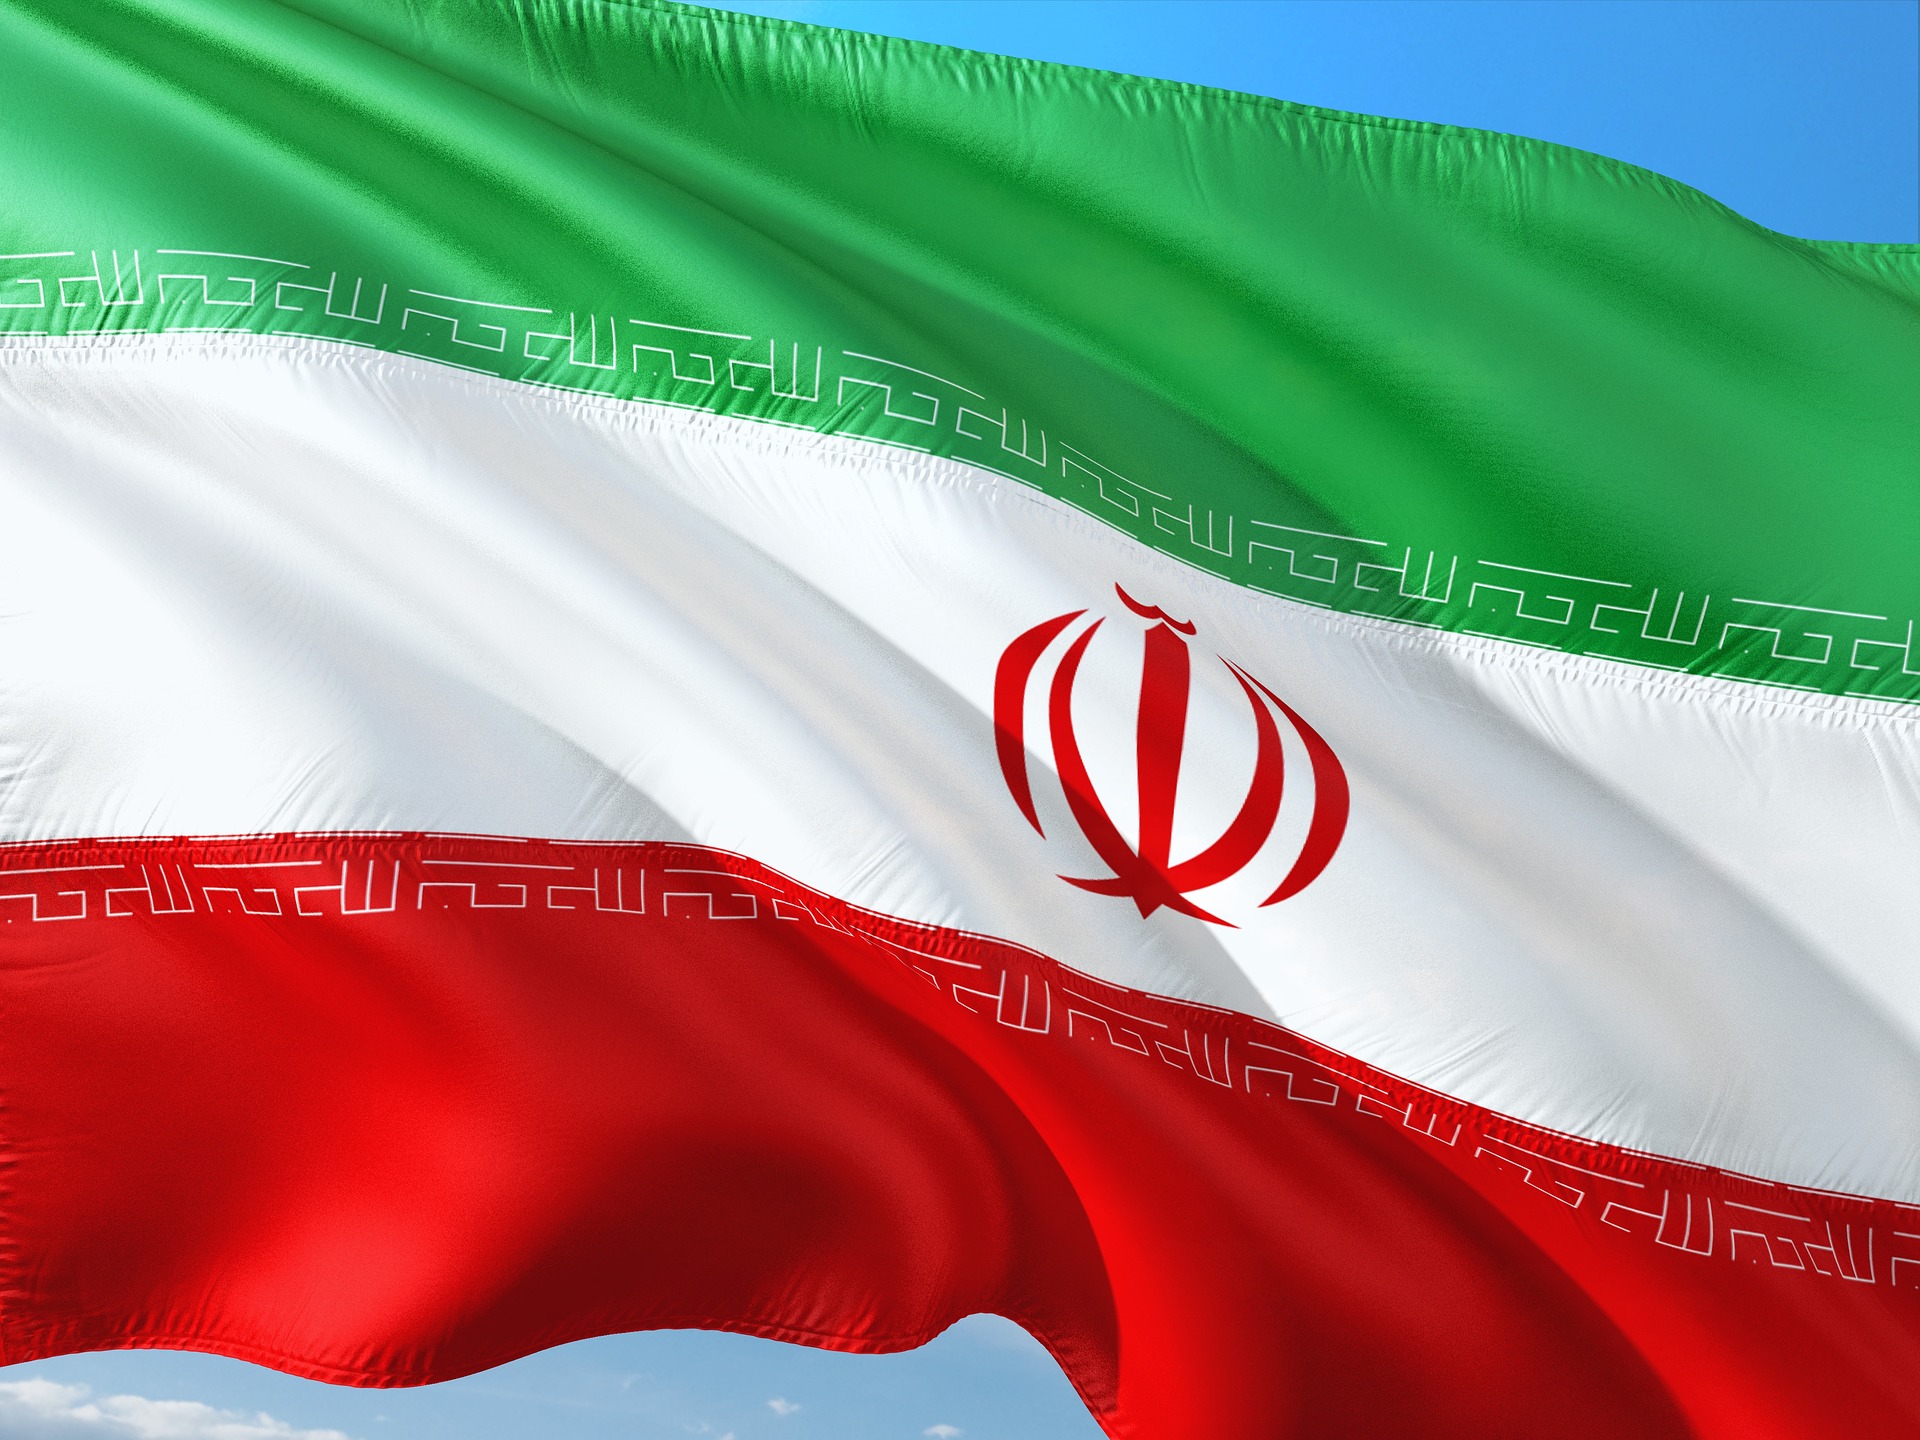 PSA, Renault, Airbus... : leurs perspectives en Iran désormais incertaines